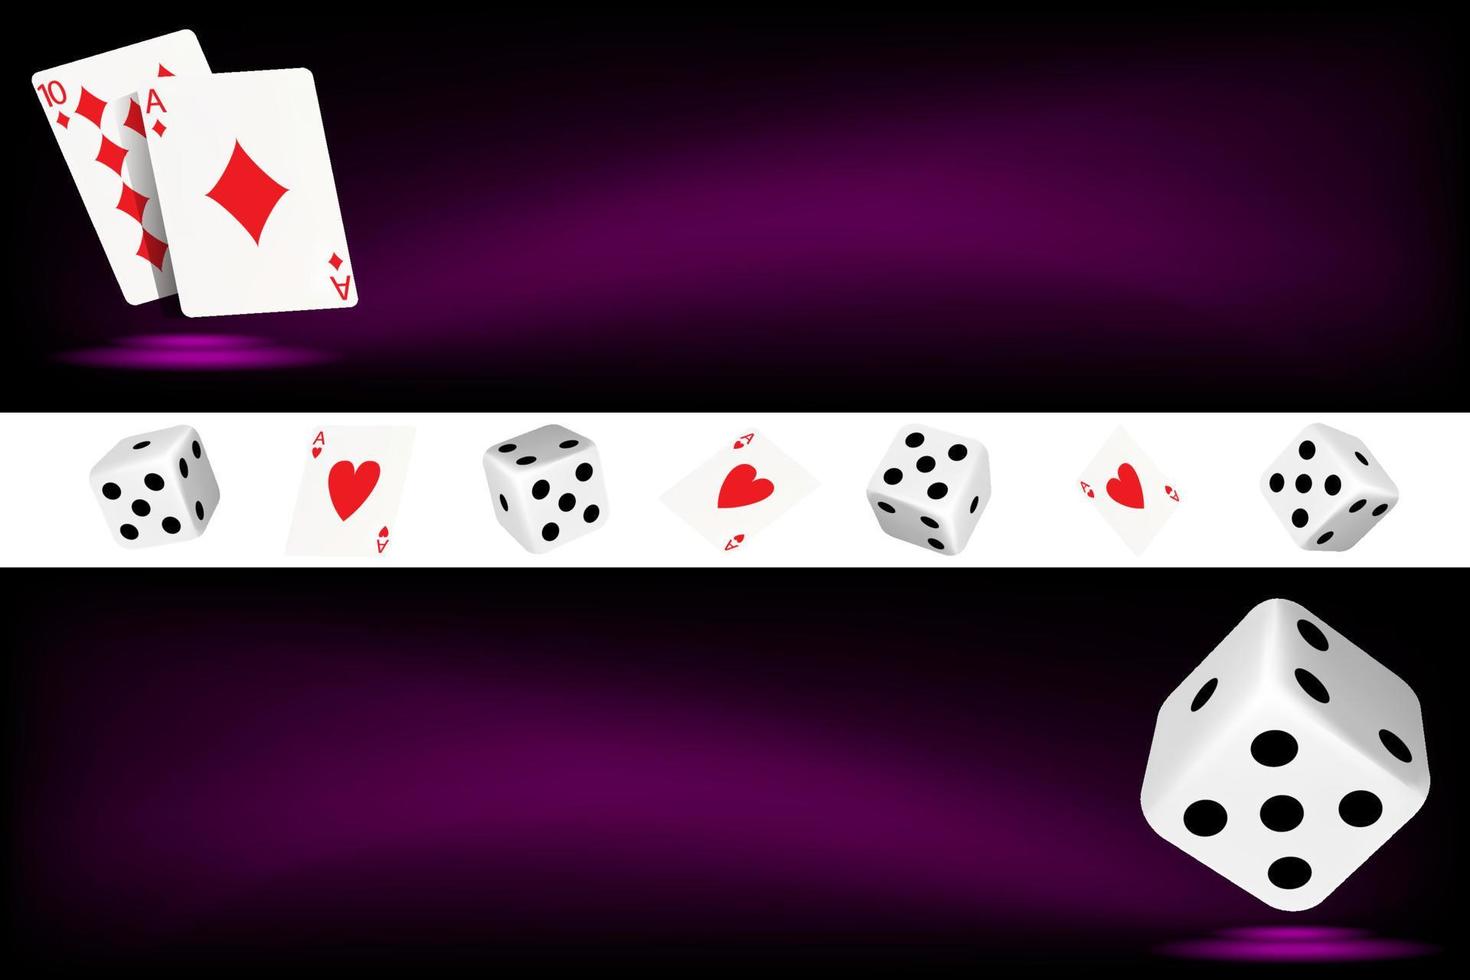 dos pancartas verticales con naipes, dados y fichas sobre un fondo morado oscuro. el concepto de juego, casino en línea. imagen vectorial vector